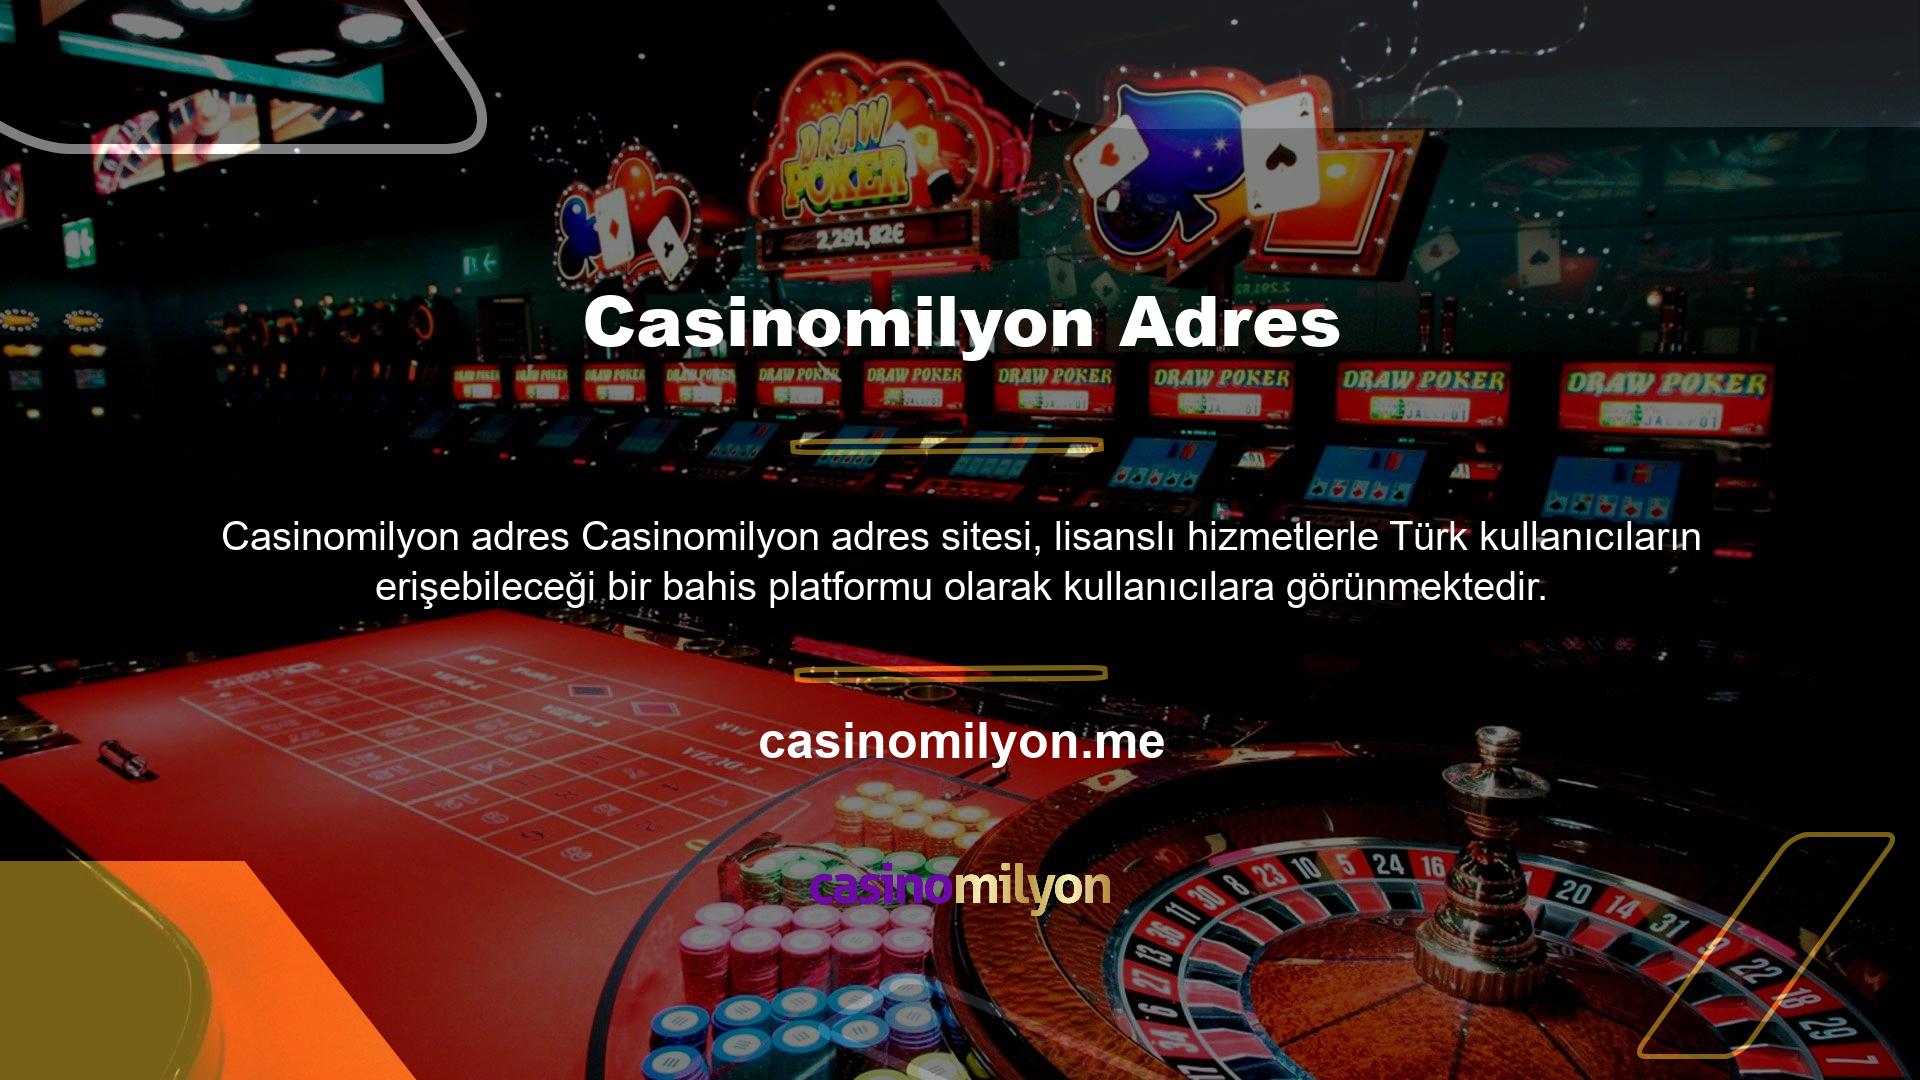 TV işlevselliği, güvenilirliği, bonusları ve kullanıcı dostu giriş sistemi nedeniyle oyuncular Casinomilyon adresine çekildi